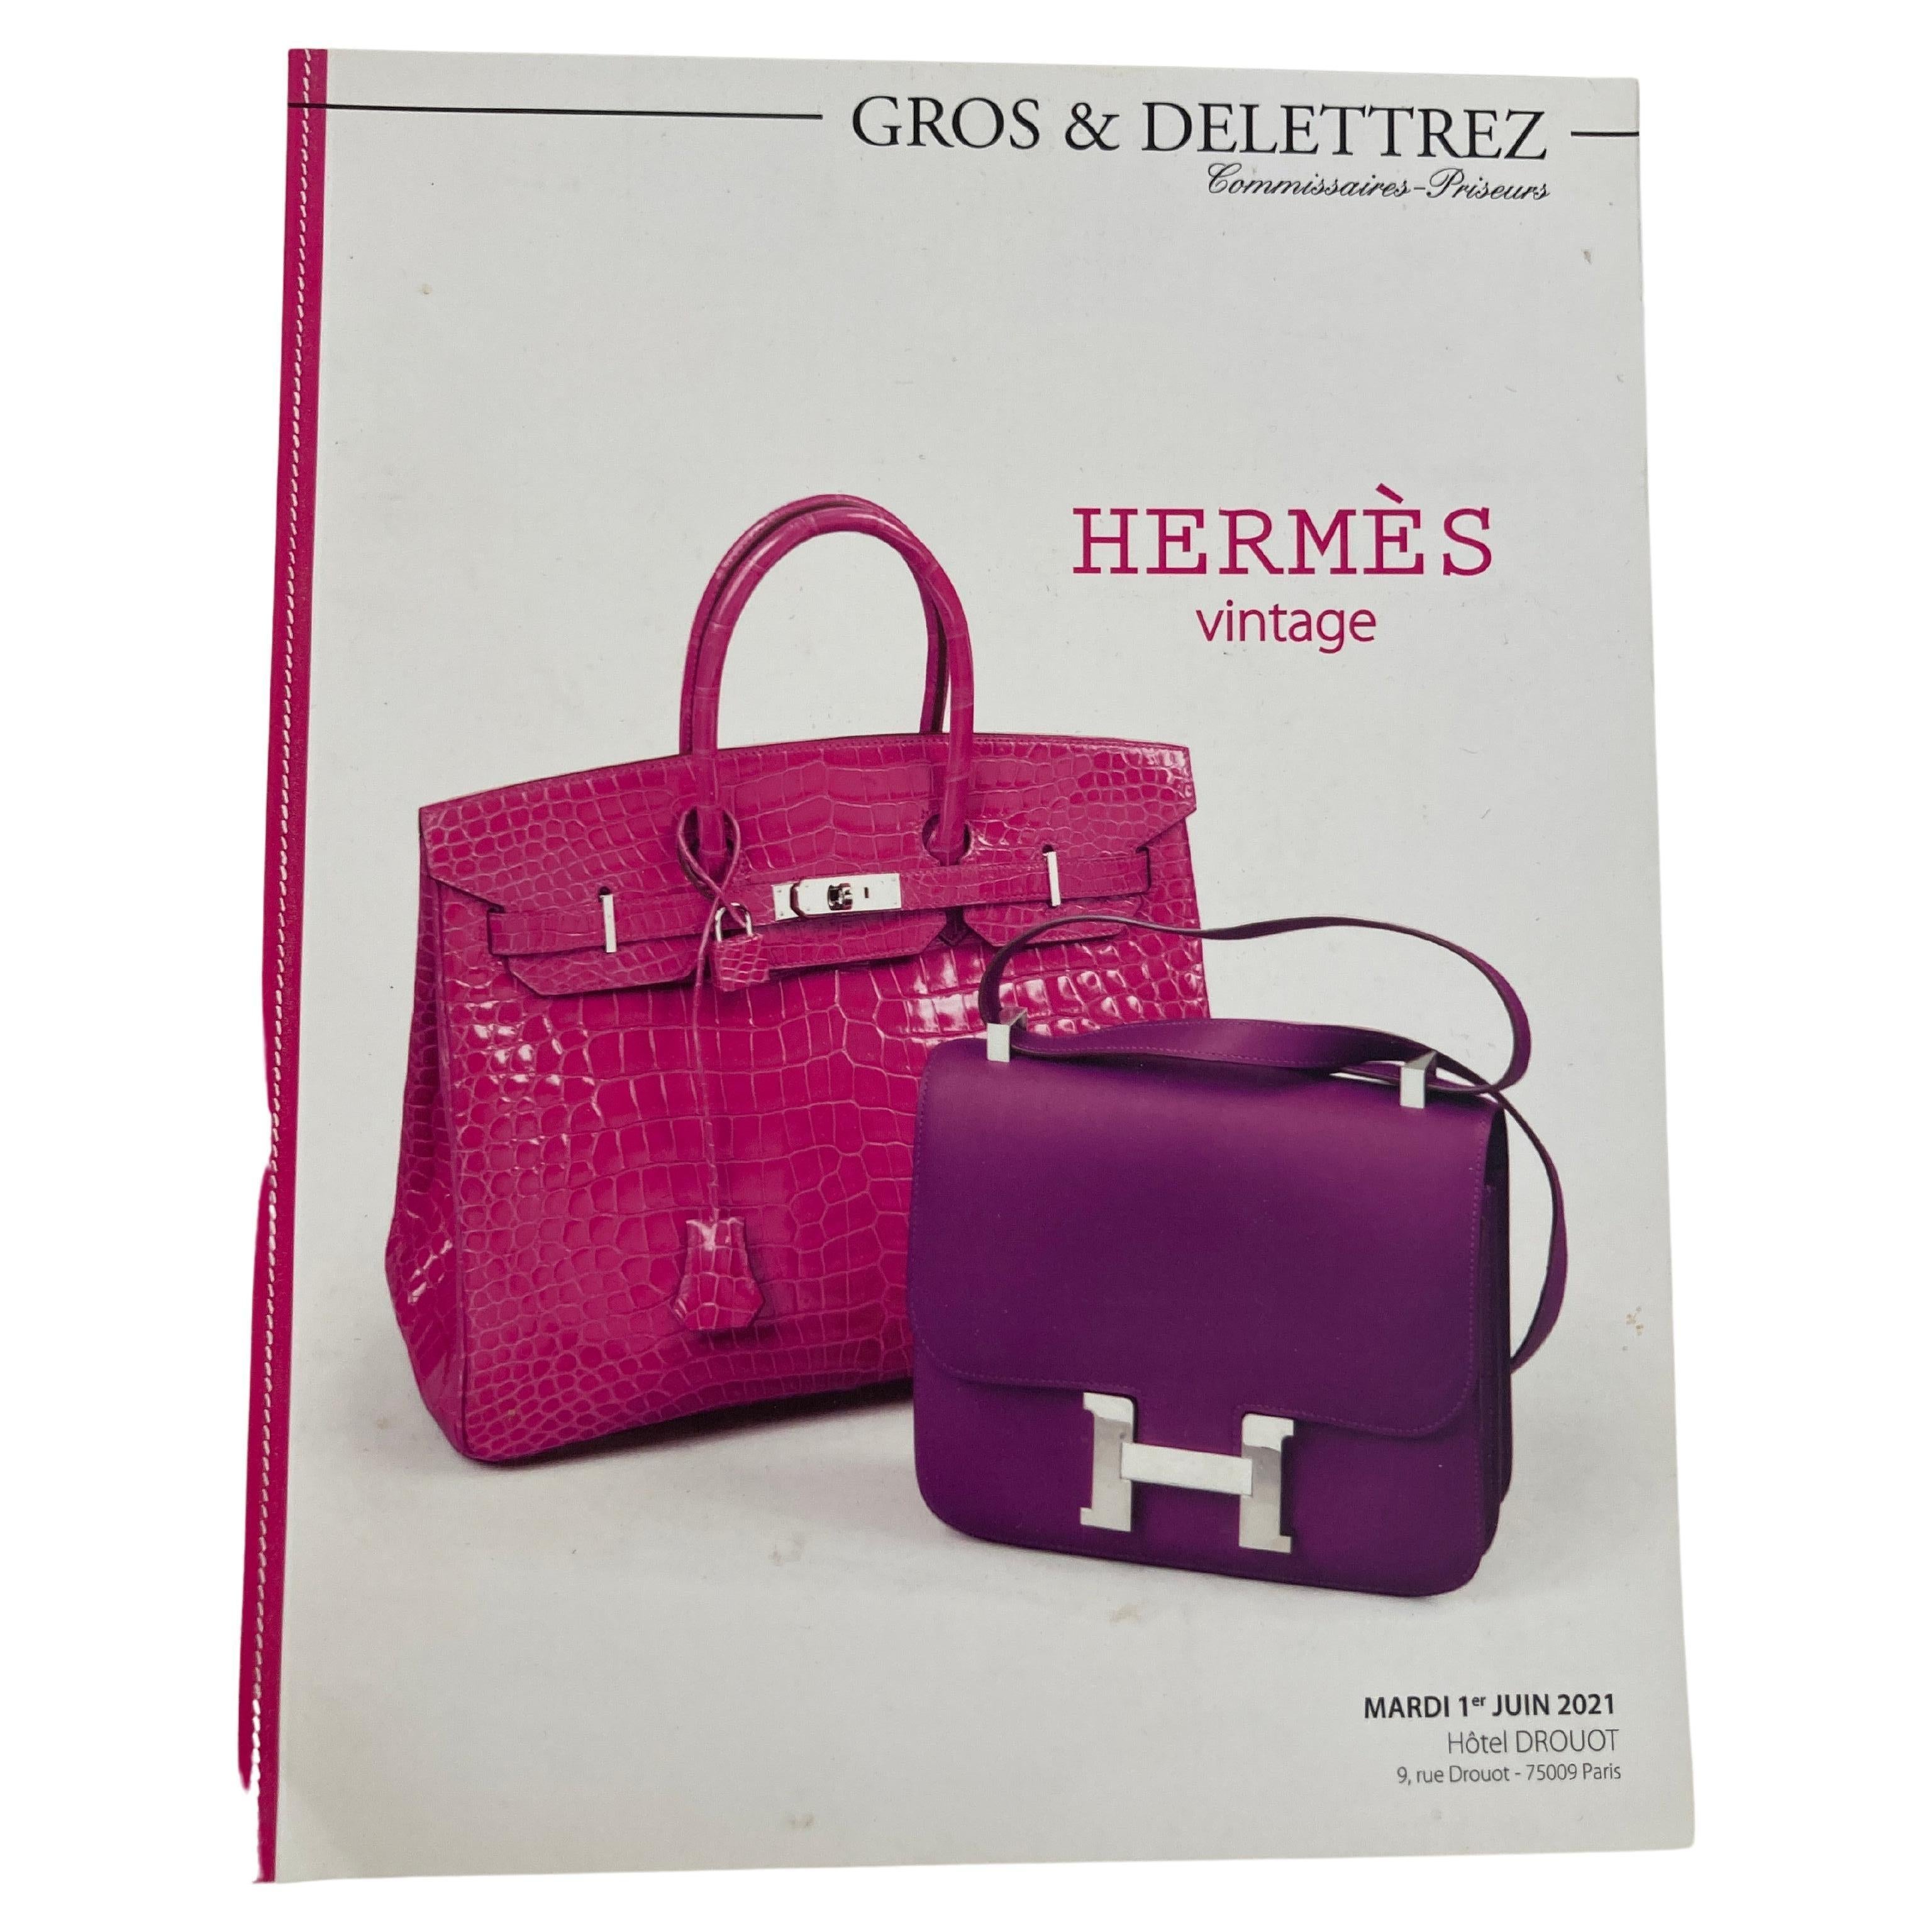 Hermes Vintage Paris Auction Catalog 2021 Published by Gros & Delettrez For Sale